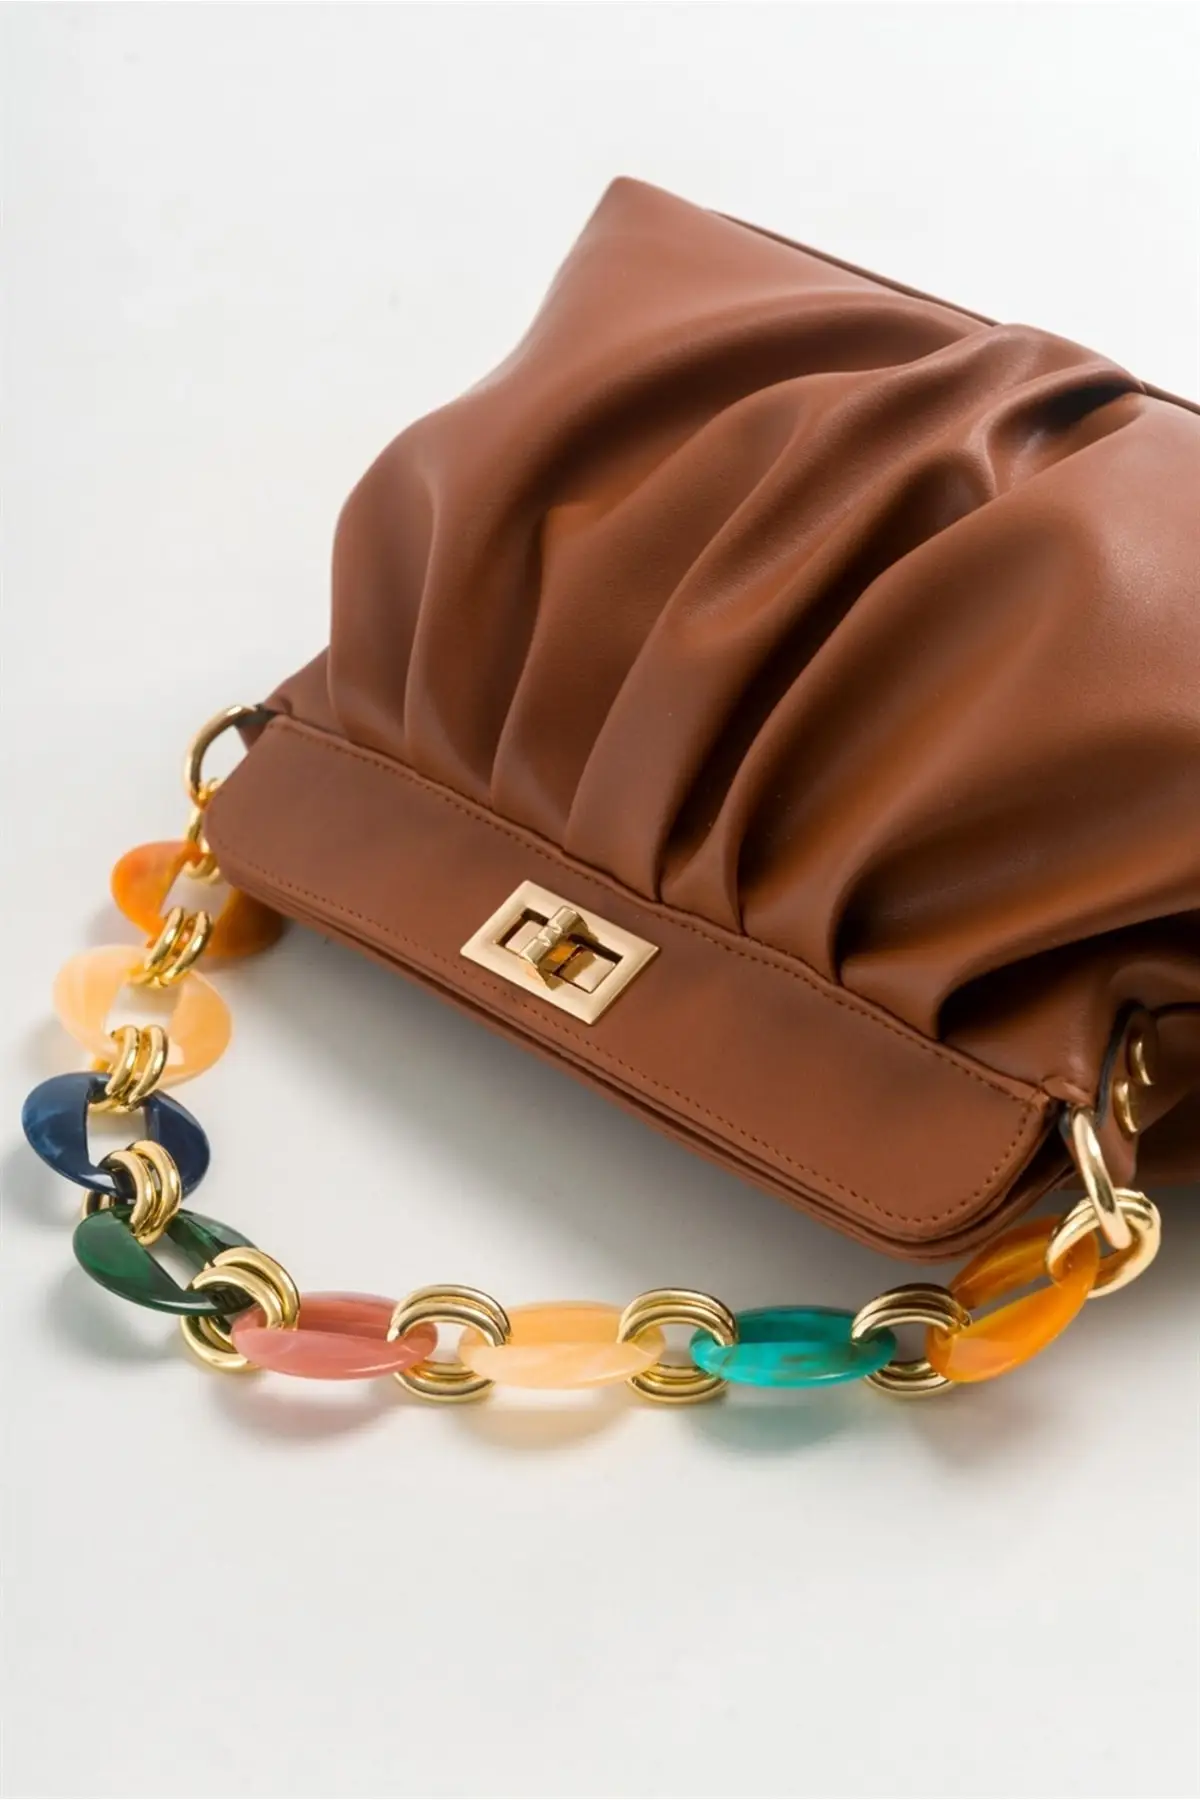 

Женская вечерняя сумочка Layla, табачный клатч с цепочкой, сумка на плечо, дамские сумочки, вечерняя сумочка для свадебной вечеринки